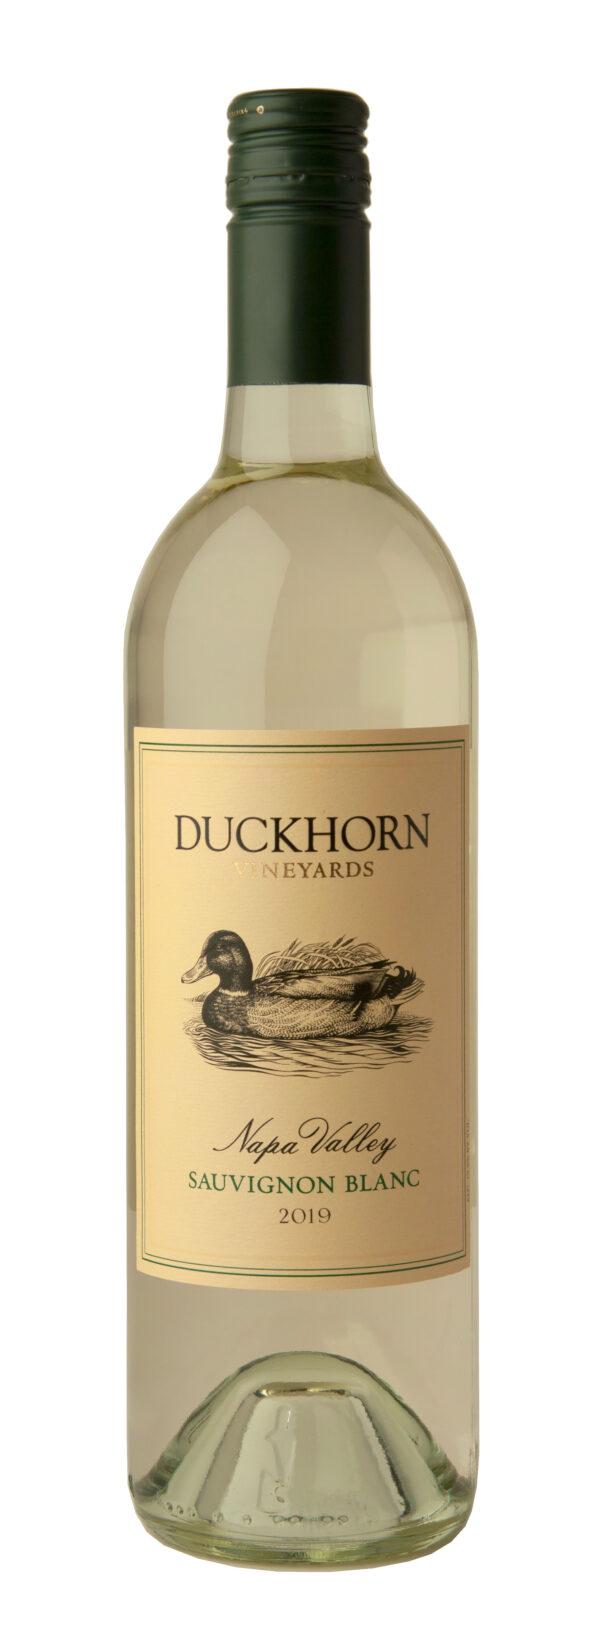 Duckhorn 2019 Sauvignon Blanc, Napa Valley. (Courtesy of Duckhorn Vineyards)